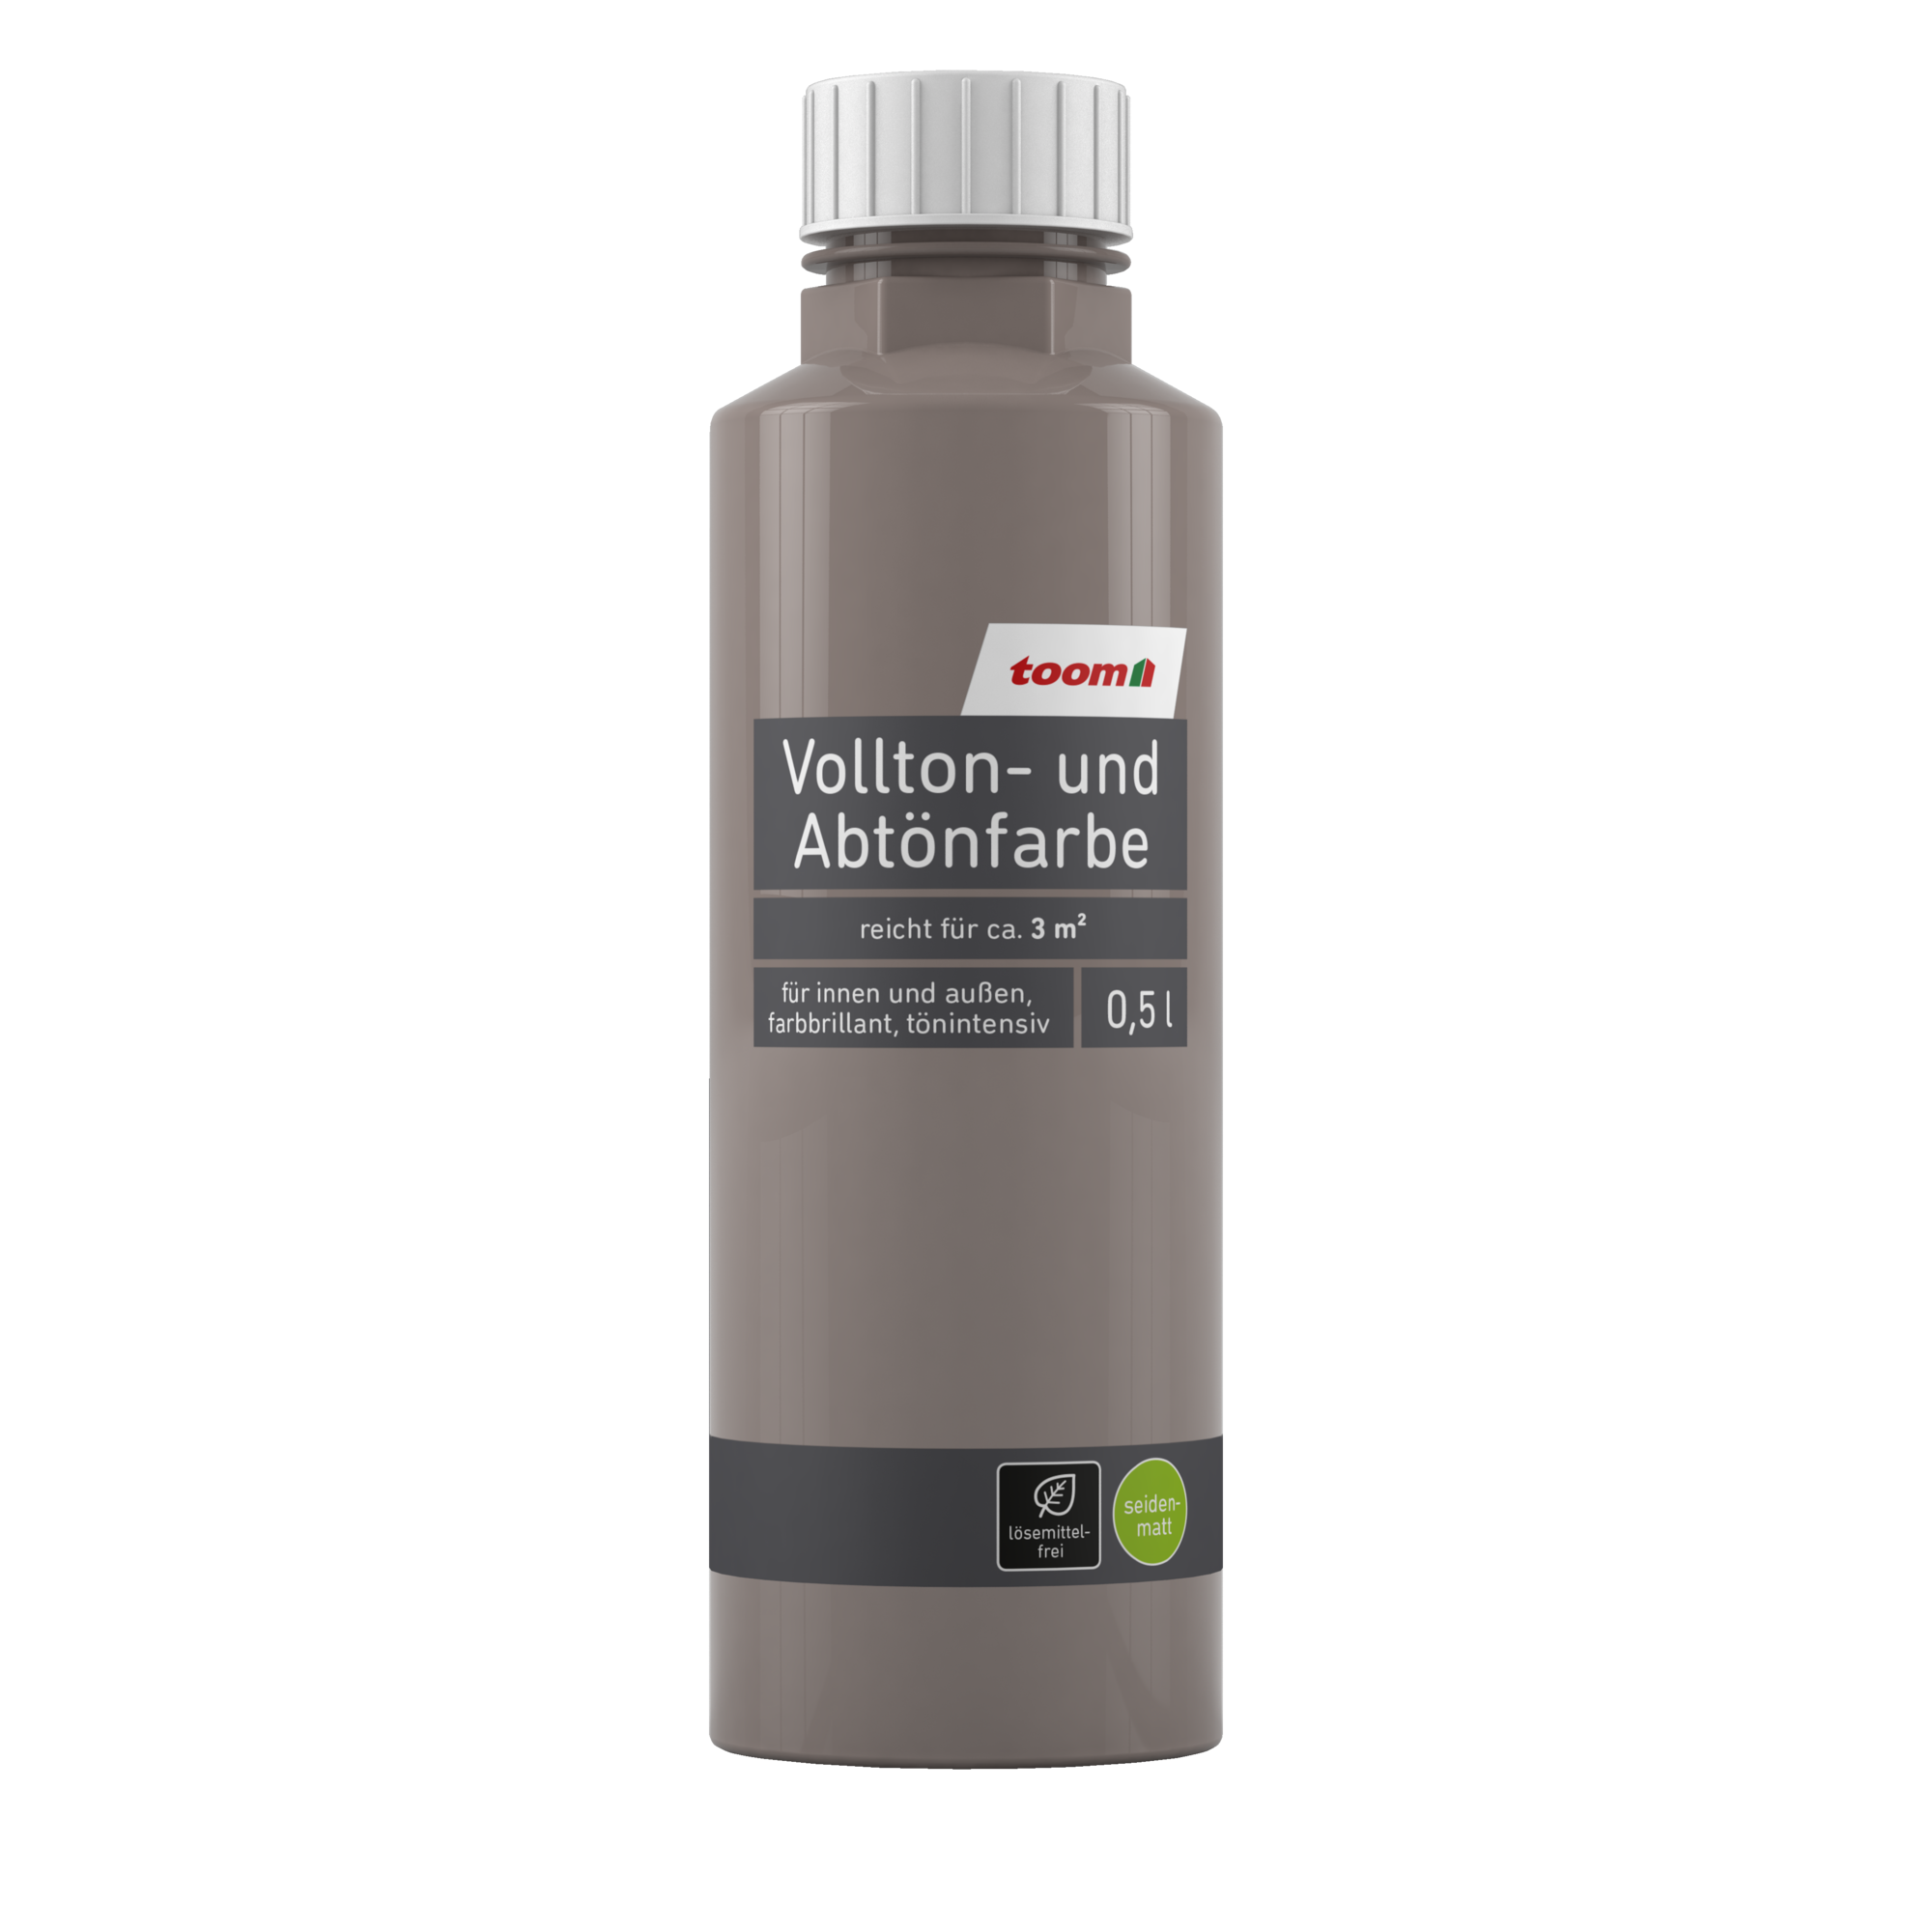 Voll- und Abtönfarbe sandfarben 500 ml + product picture